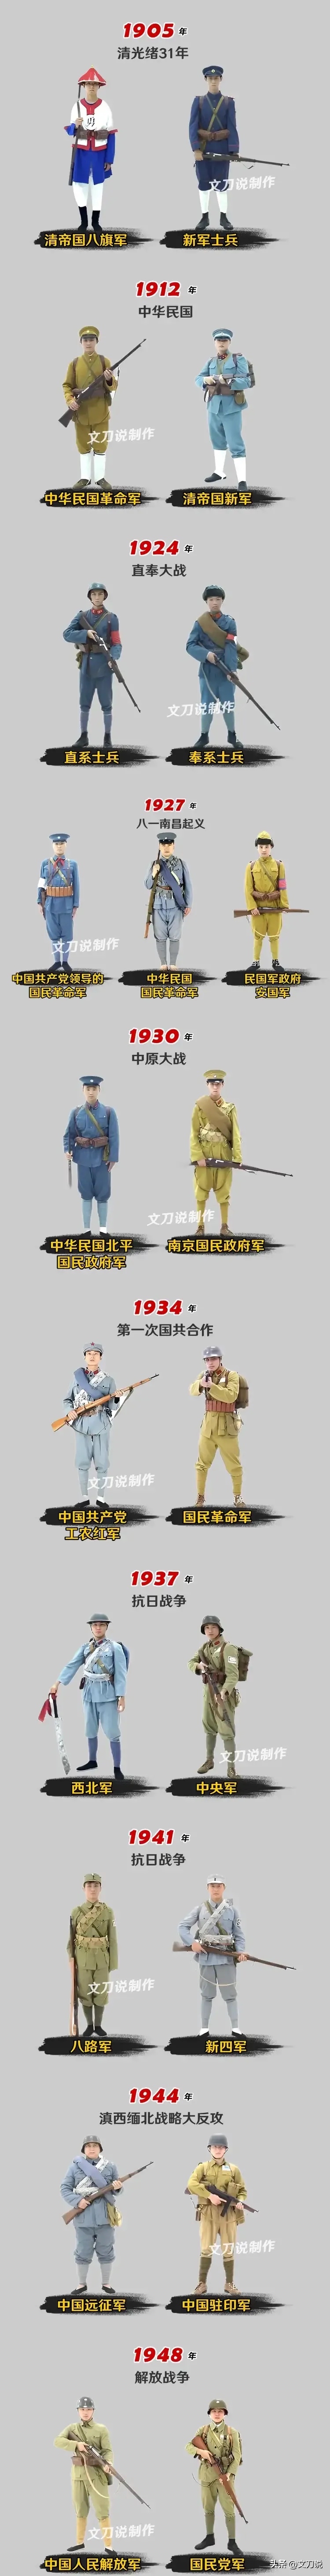 中国士兵军装演变过程(1905年